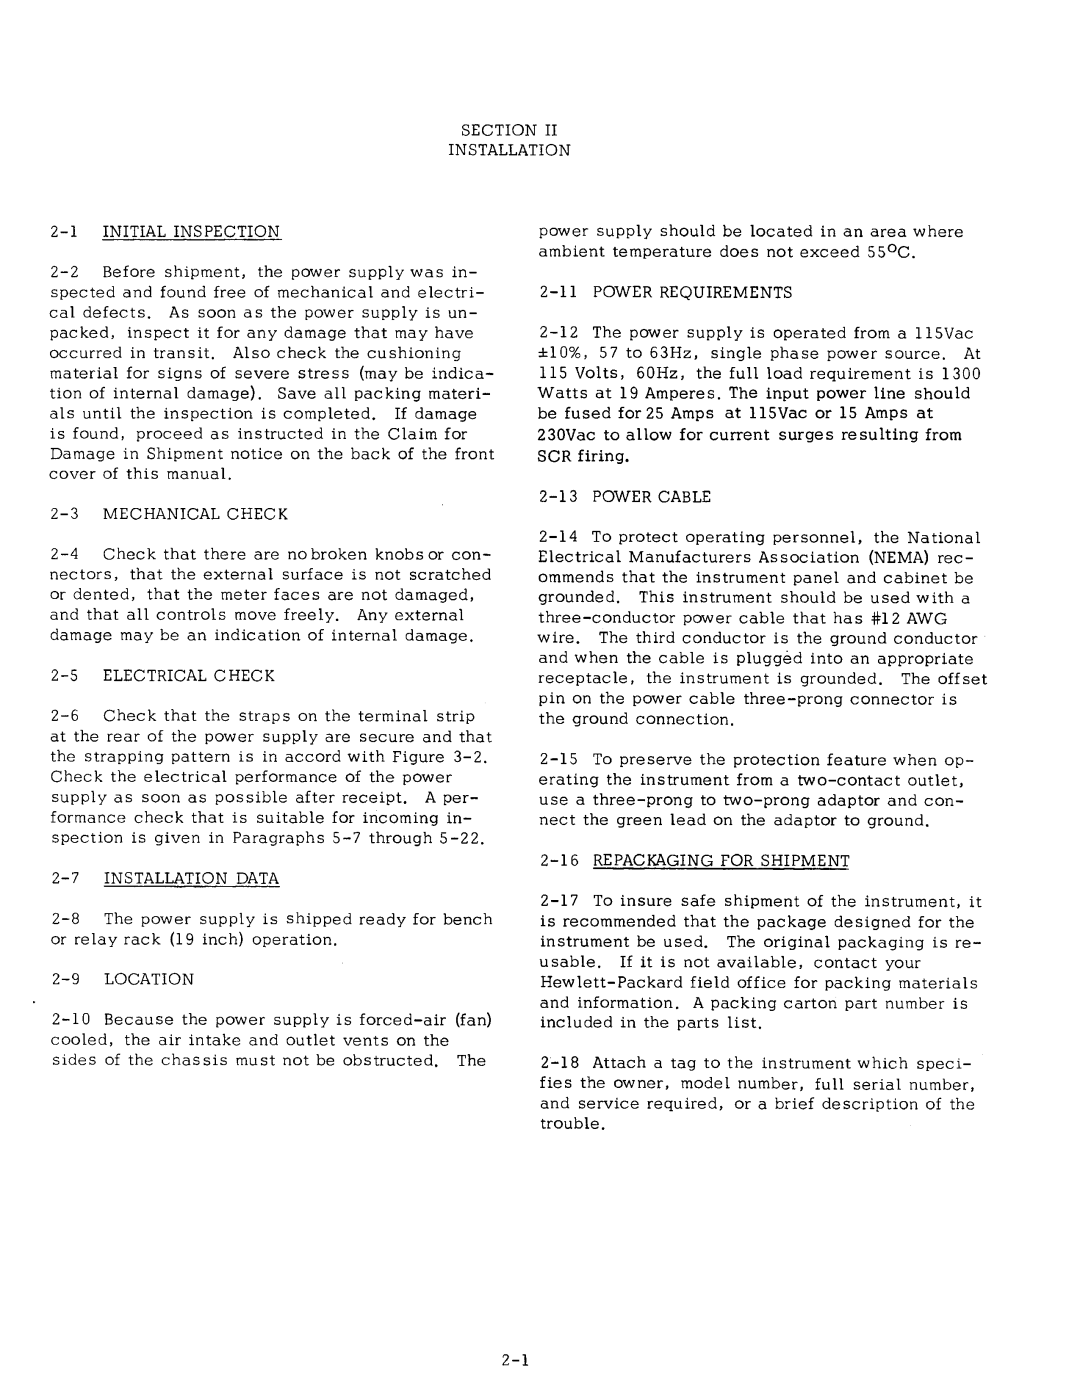 Agilent Technologies 0634-90001 service manual 